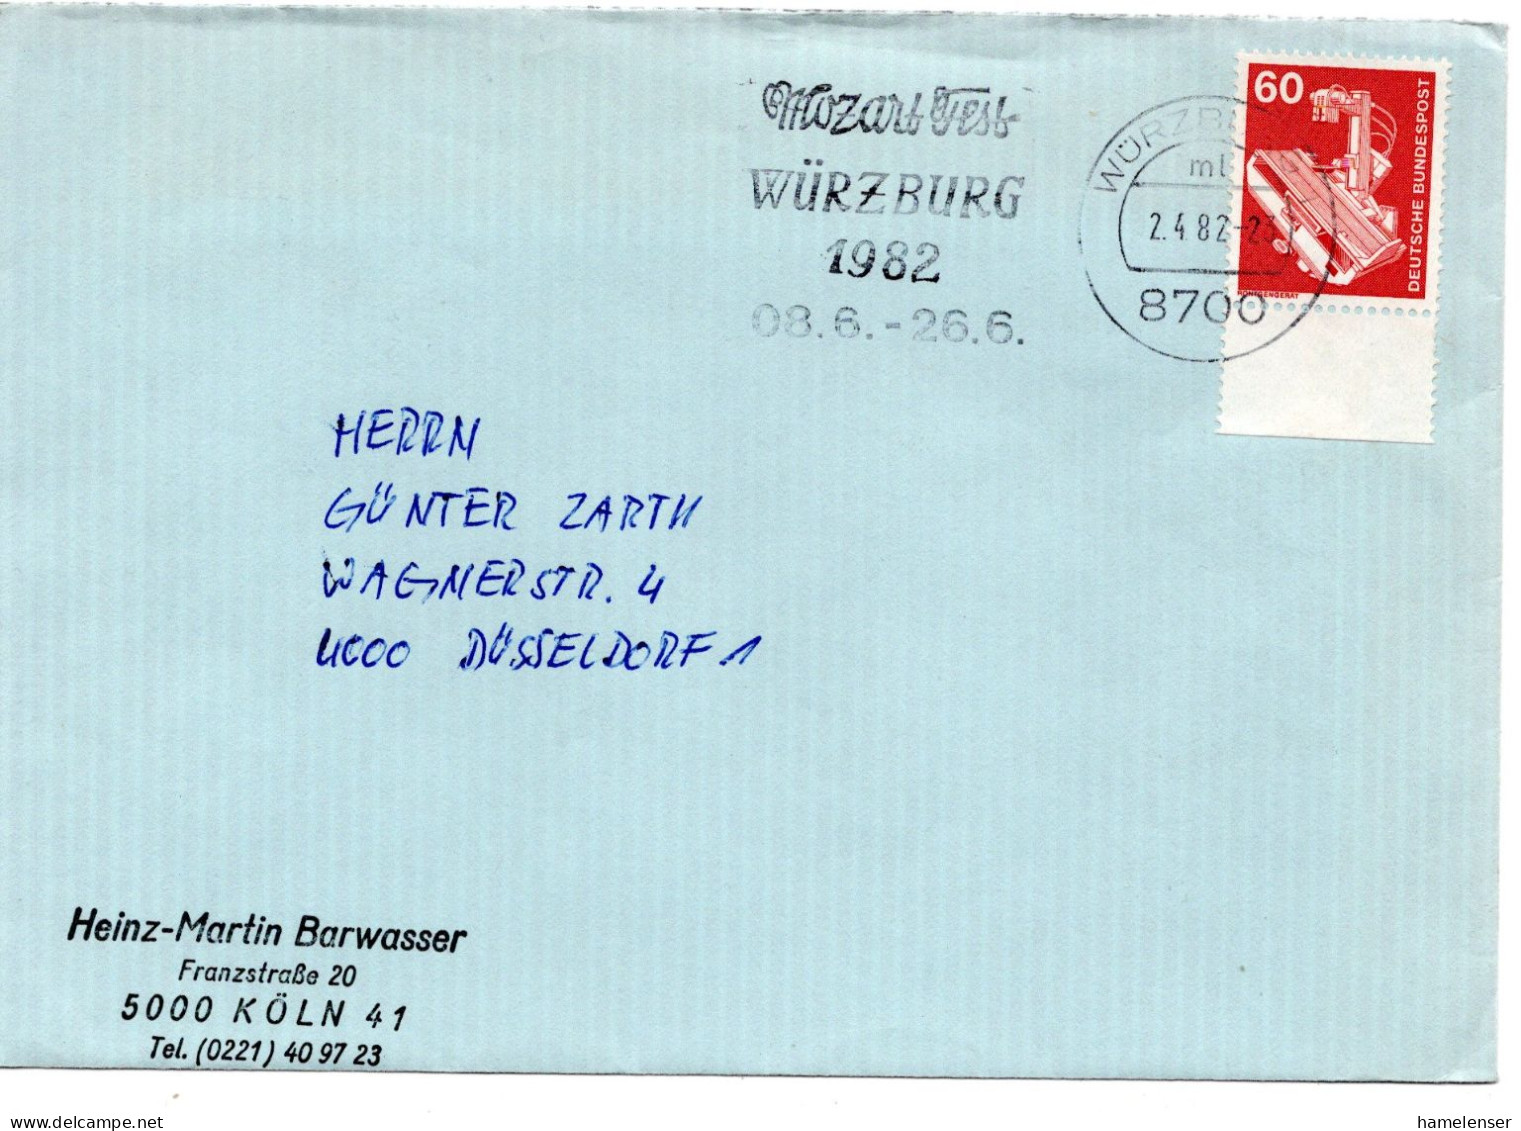 63007 - Bund - 1982 - 60Pfg I&T EF A Bf WUERZBURG - MOZART-FEST ... -> Duesseldorf - Música